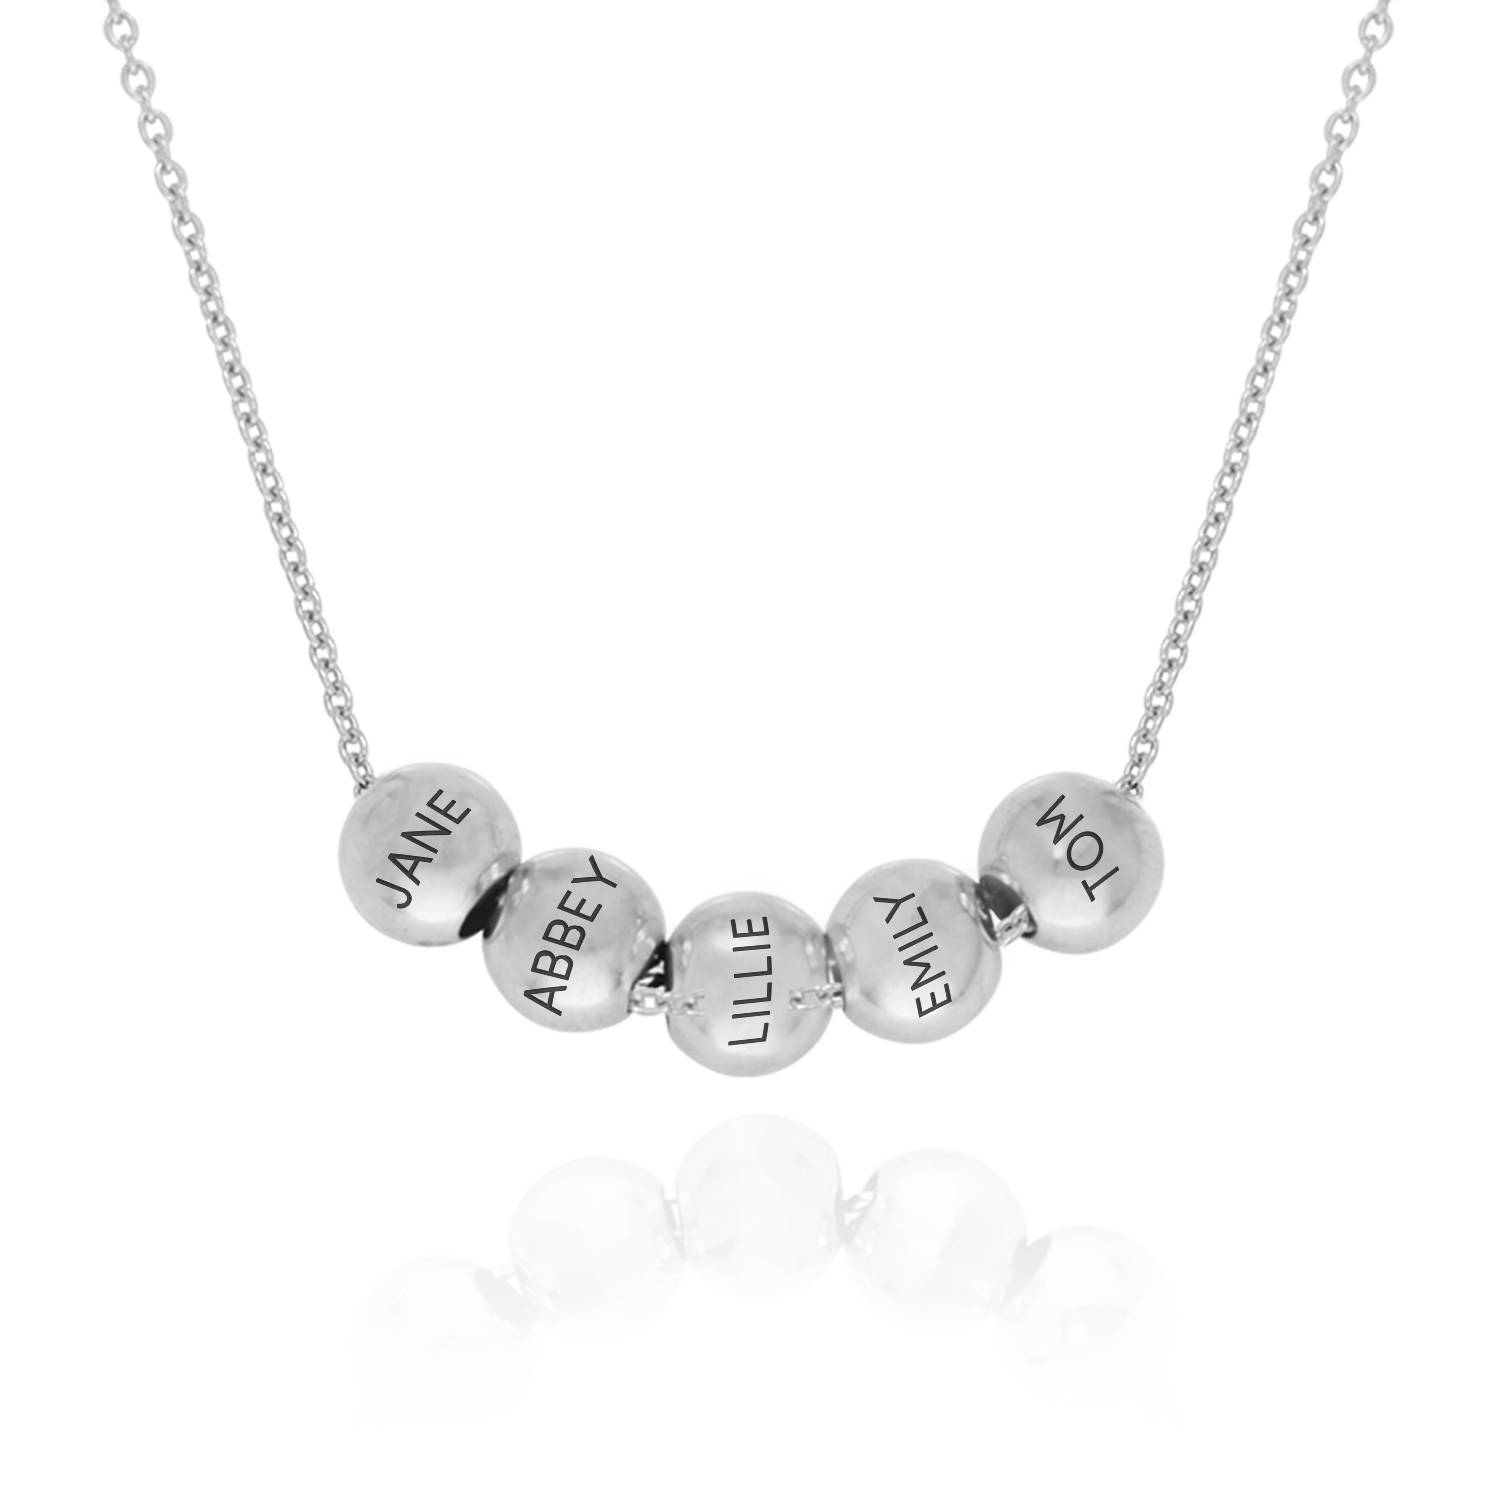 Balance halskæde med Kabelkæde i sølv produkt billede